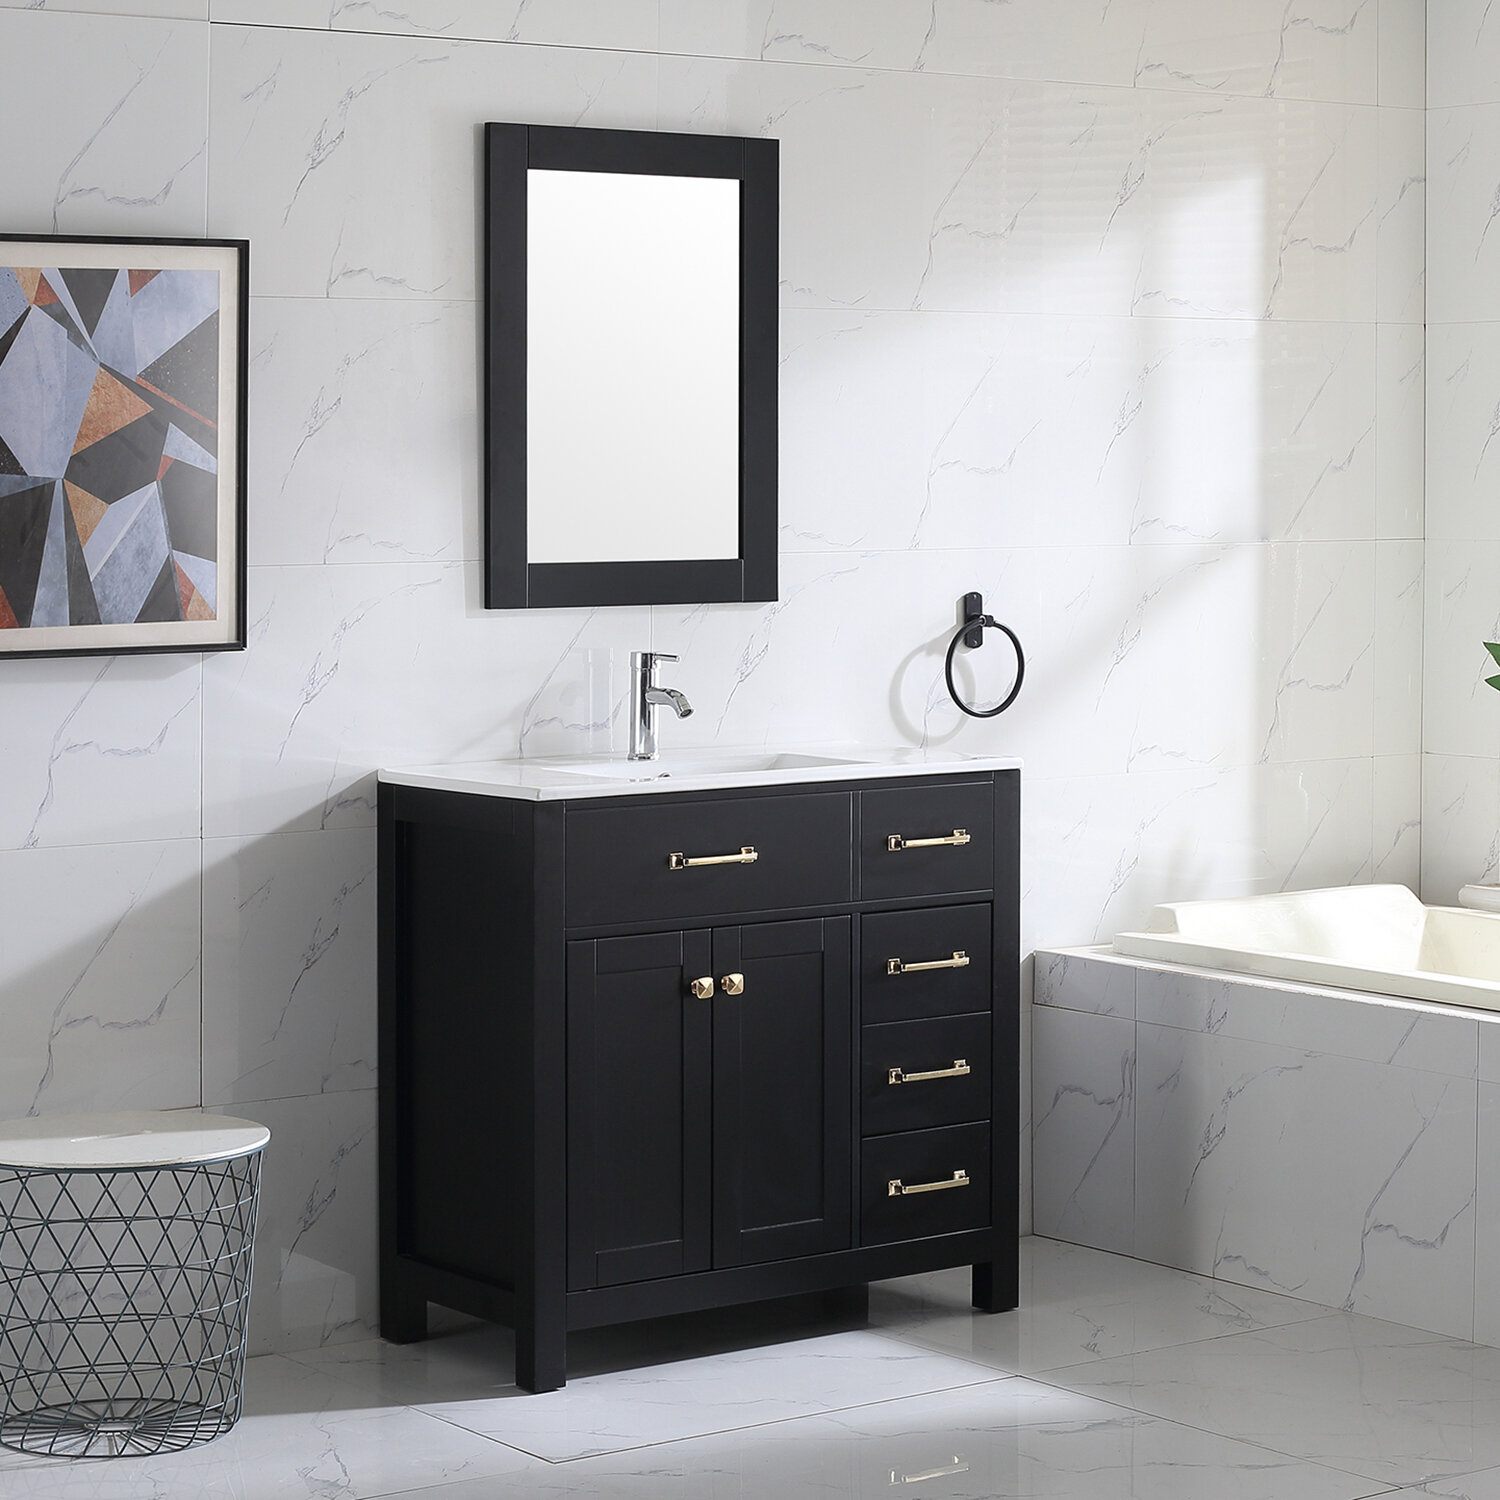 Wonline 36 Bathroom Vanity Cabinet Undermount Ceramic Sink Shaker Vanity Free Standing Black Reviews Wayfairca